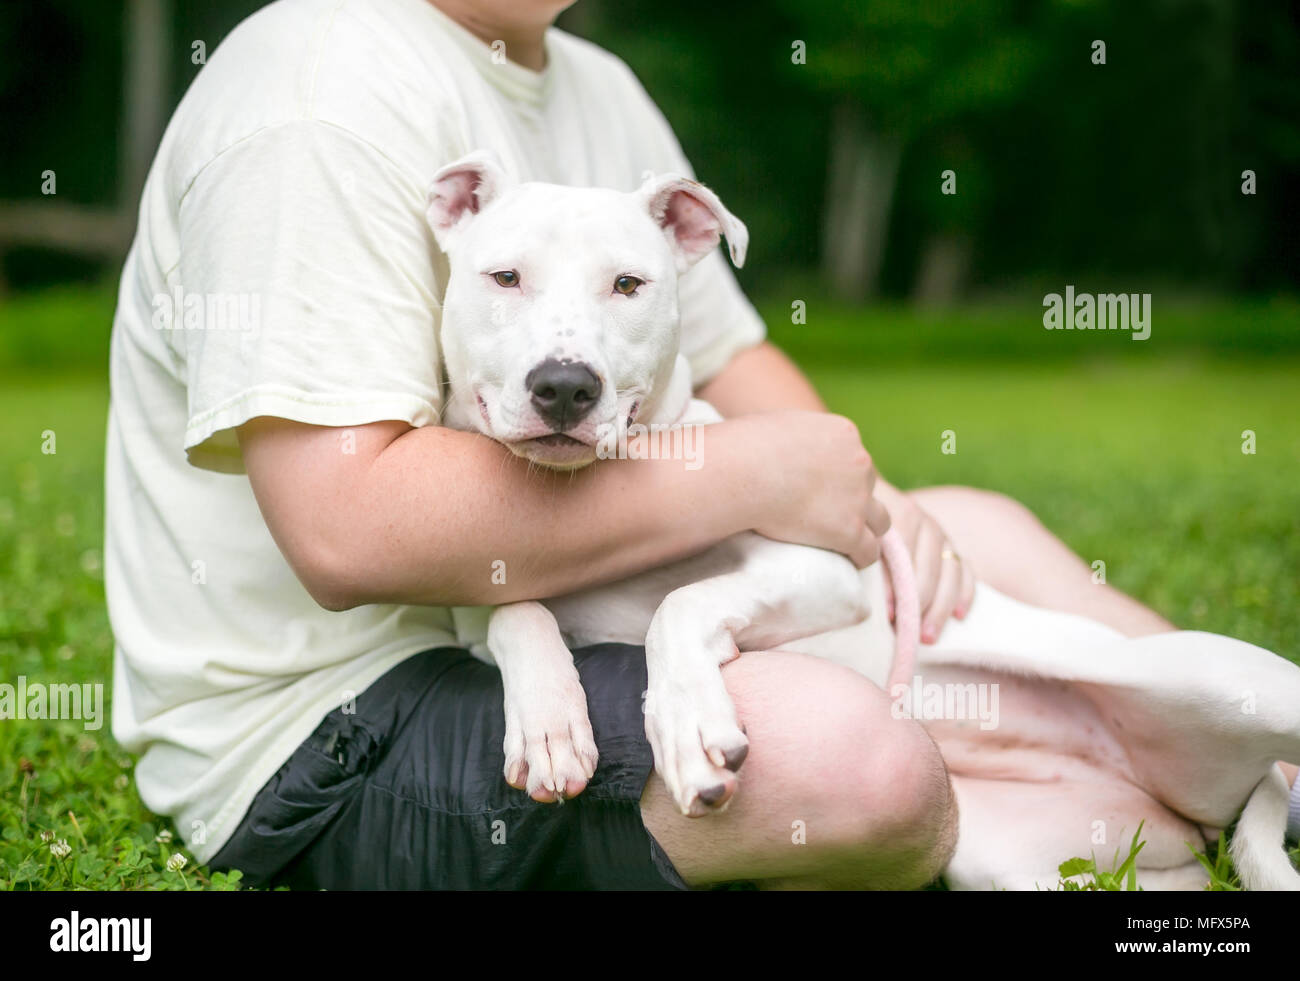 Un pit-bull terrier dog de câlins dans les genoux d'une personne Banque D'Images